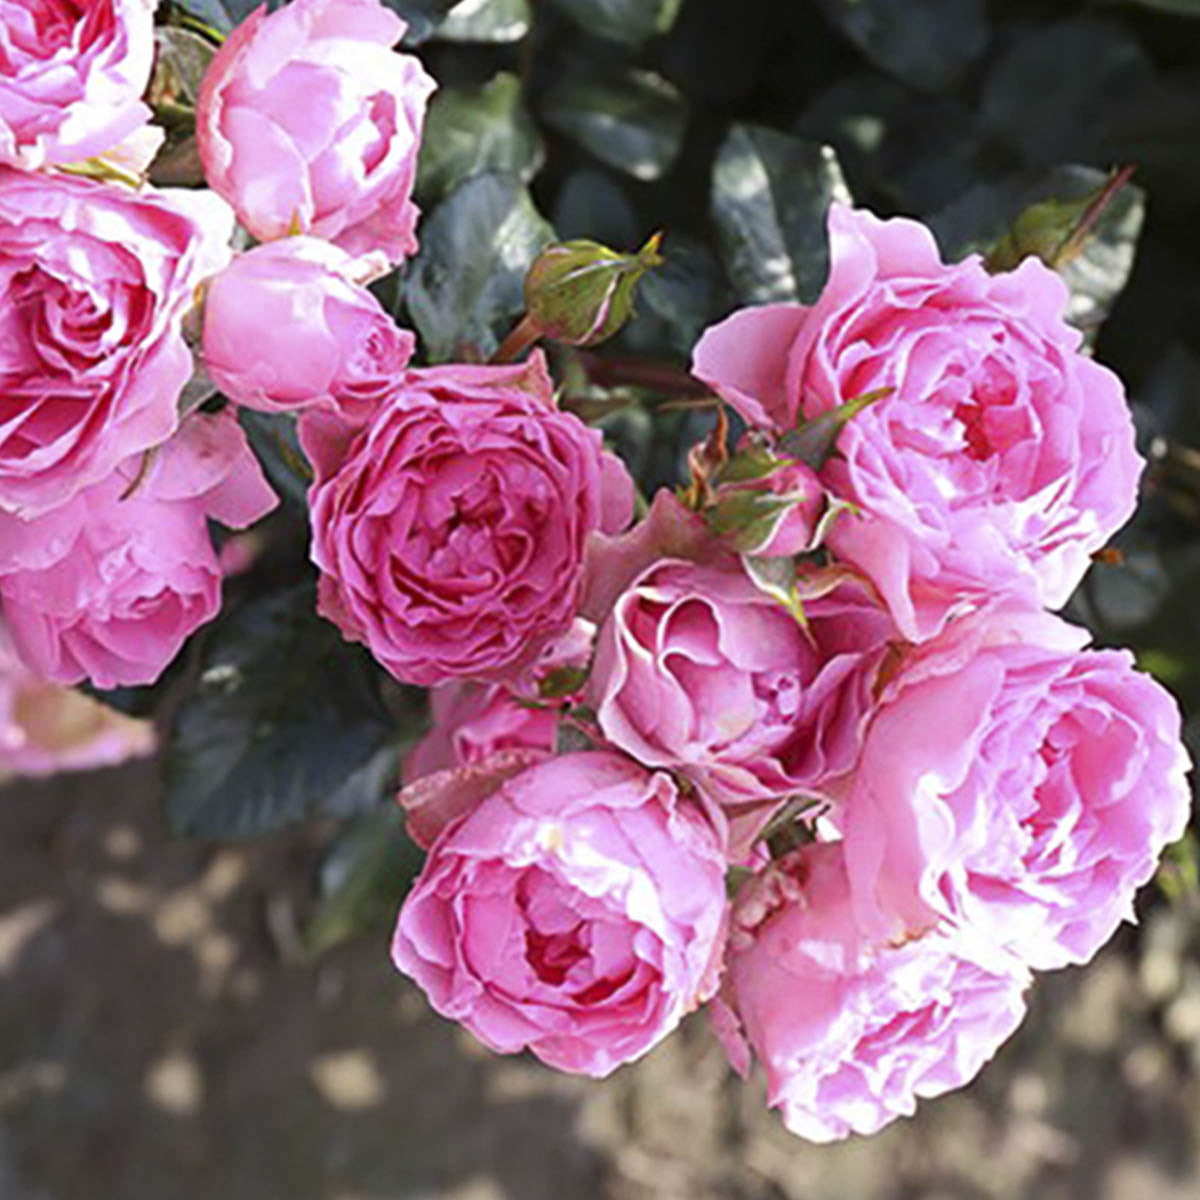 'I am Grateful' er en klaserose med rosa, fylte blomster. Den har svak duft og blomstrer fra juni til september